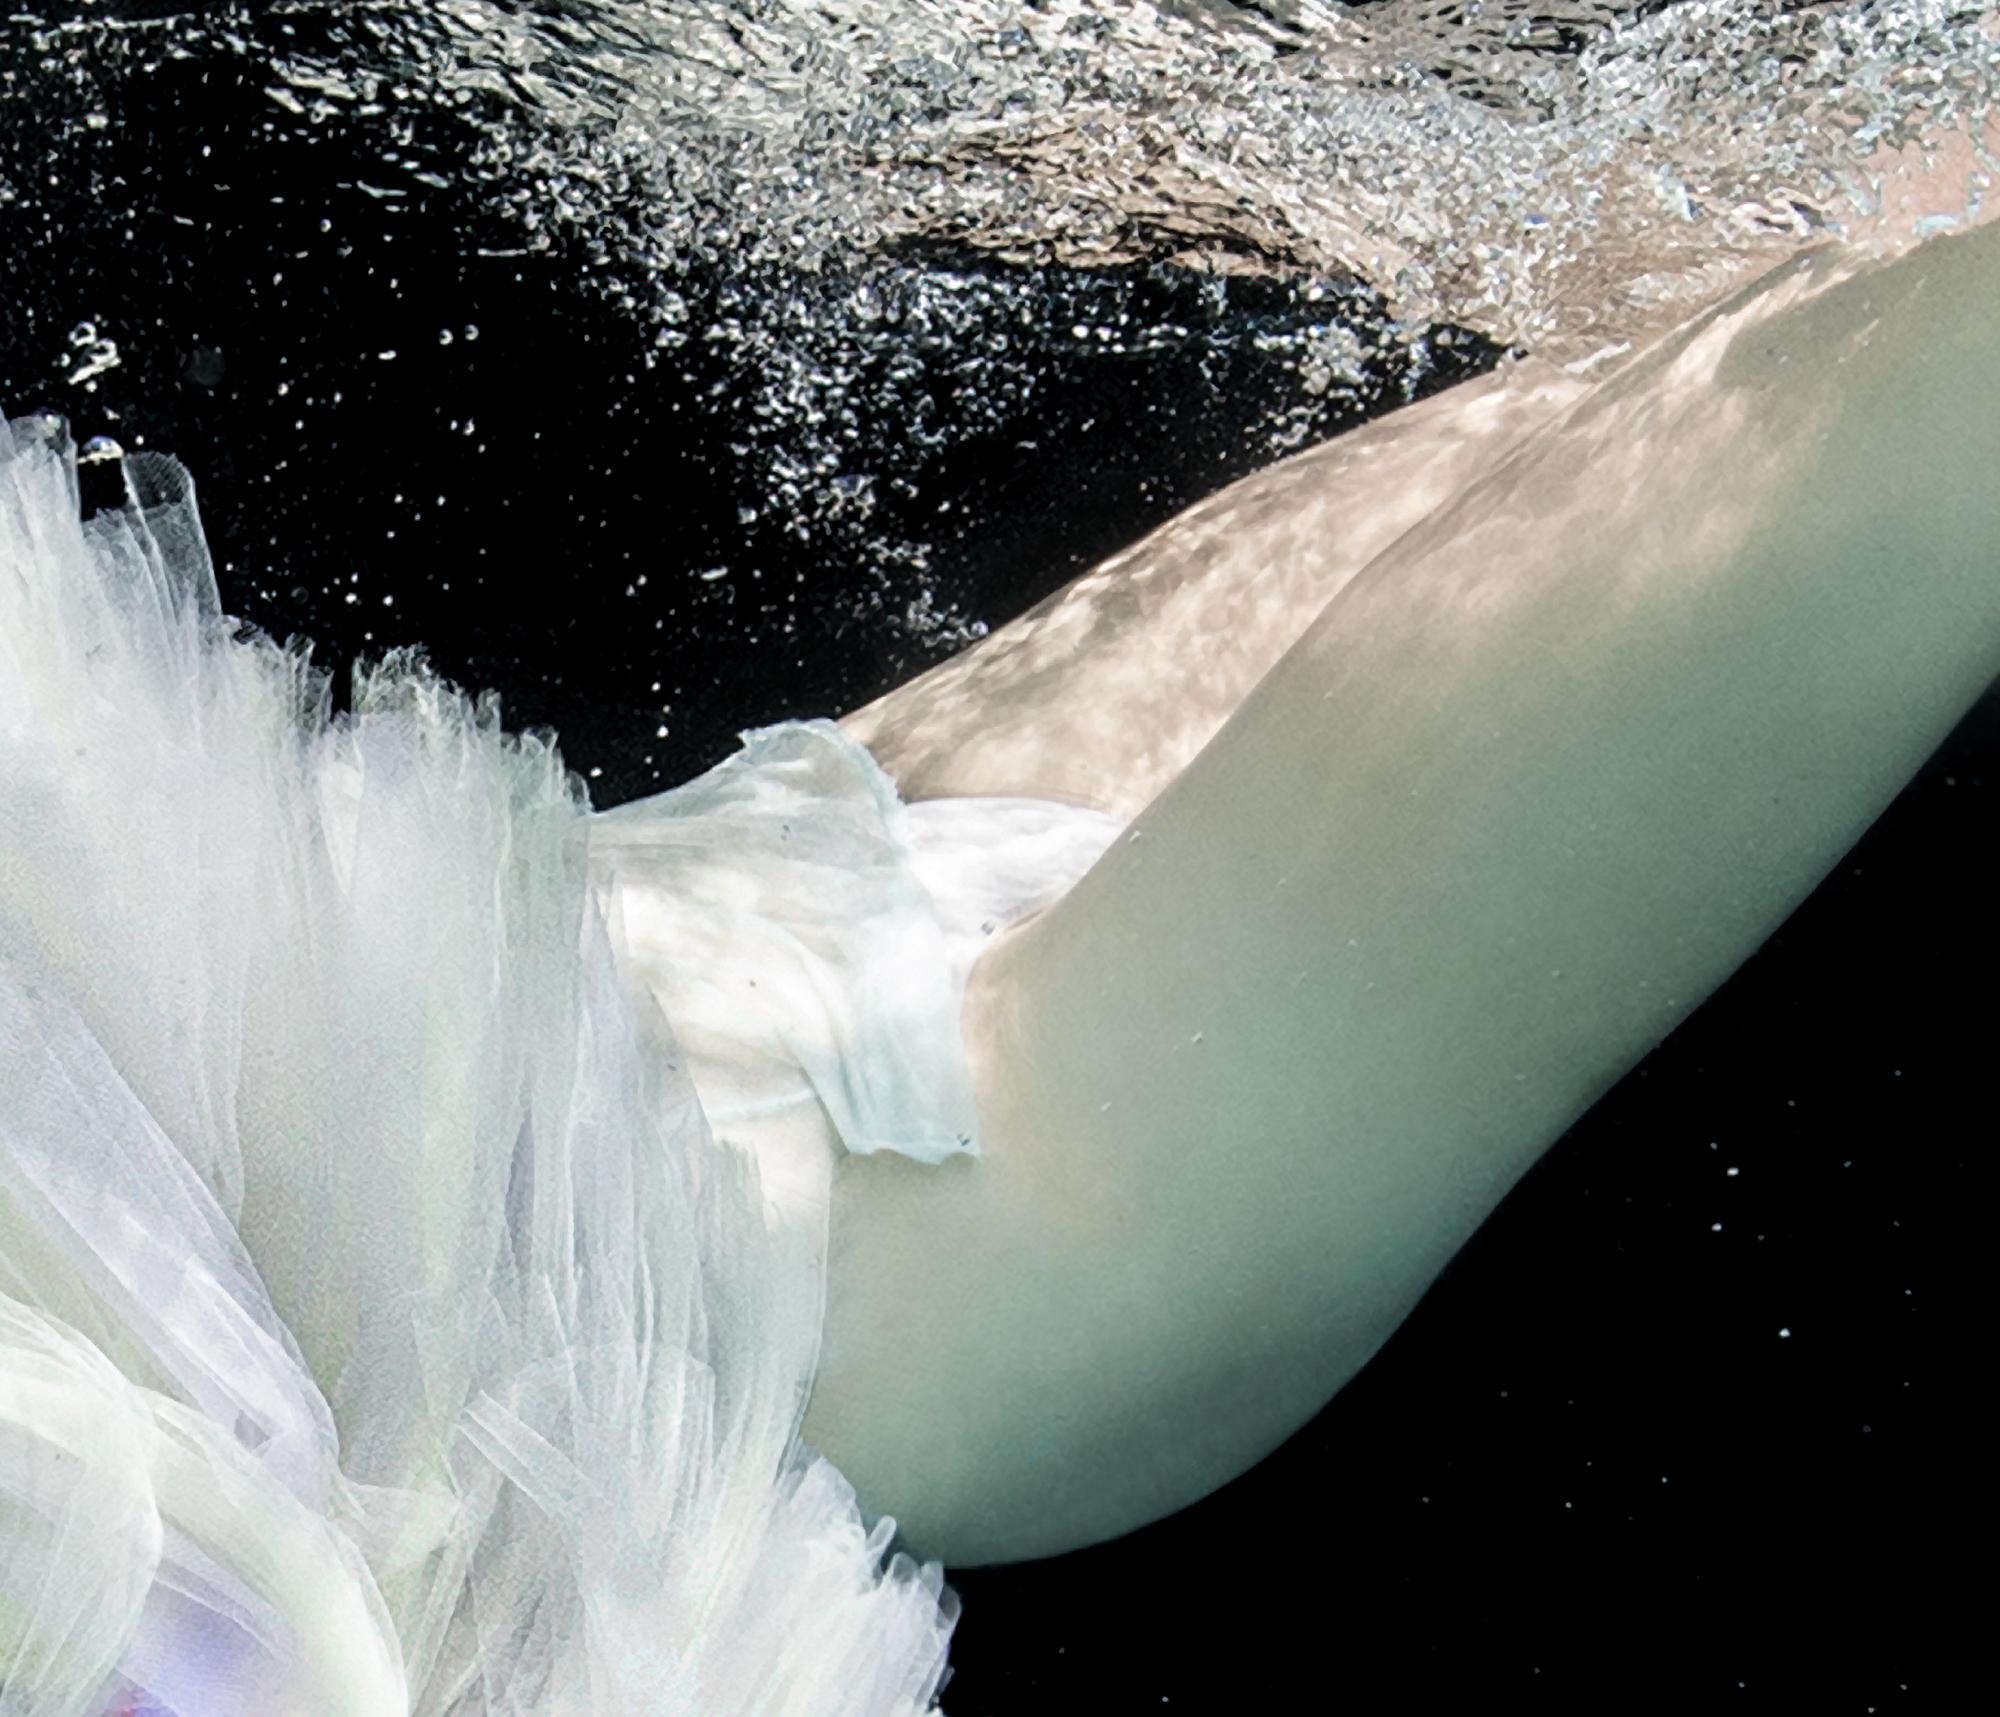 Photographie sous-marine en noir et blanc d'une jeune danseuse plongeant dans une piscine. La danse nue se couvre d'une jupe tutu.

Tirage pigmentaire original de qualité galerie sur papier d'archives signé par l'artiste. 
Edition limitée à 24